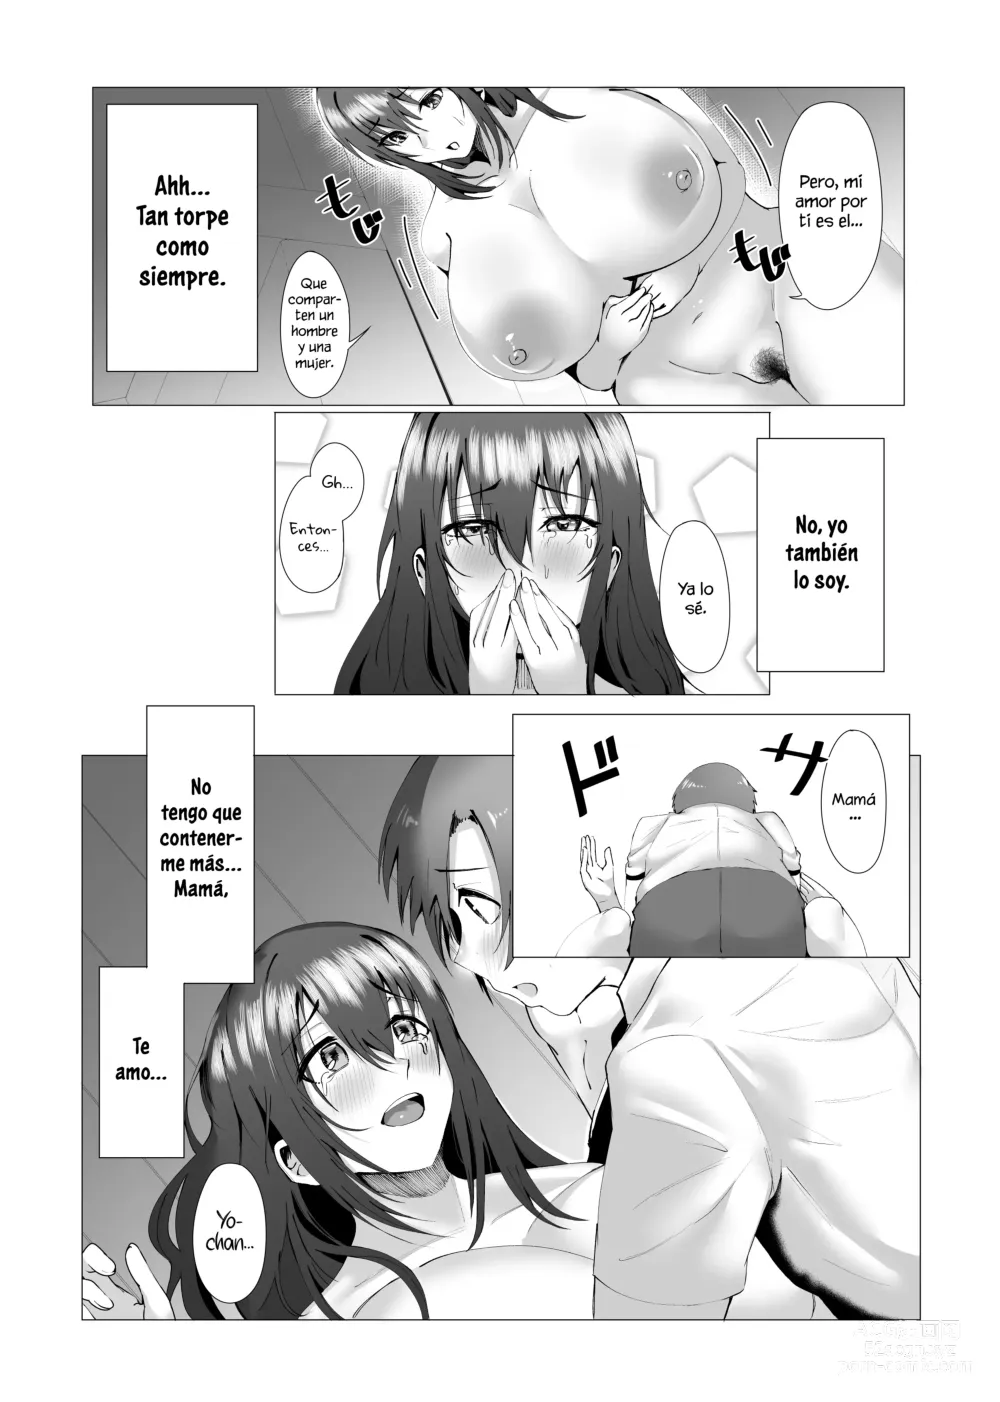 Page 13 of doujinshi ¿Estas bien con mami?